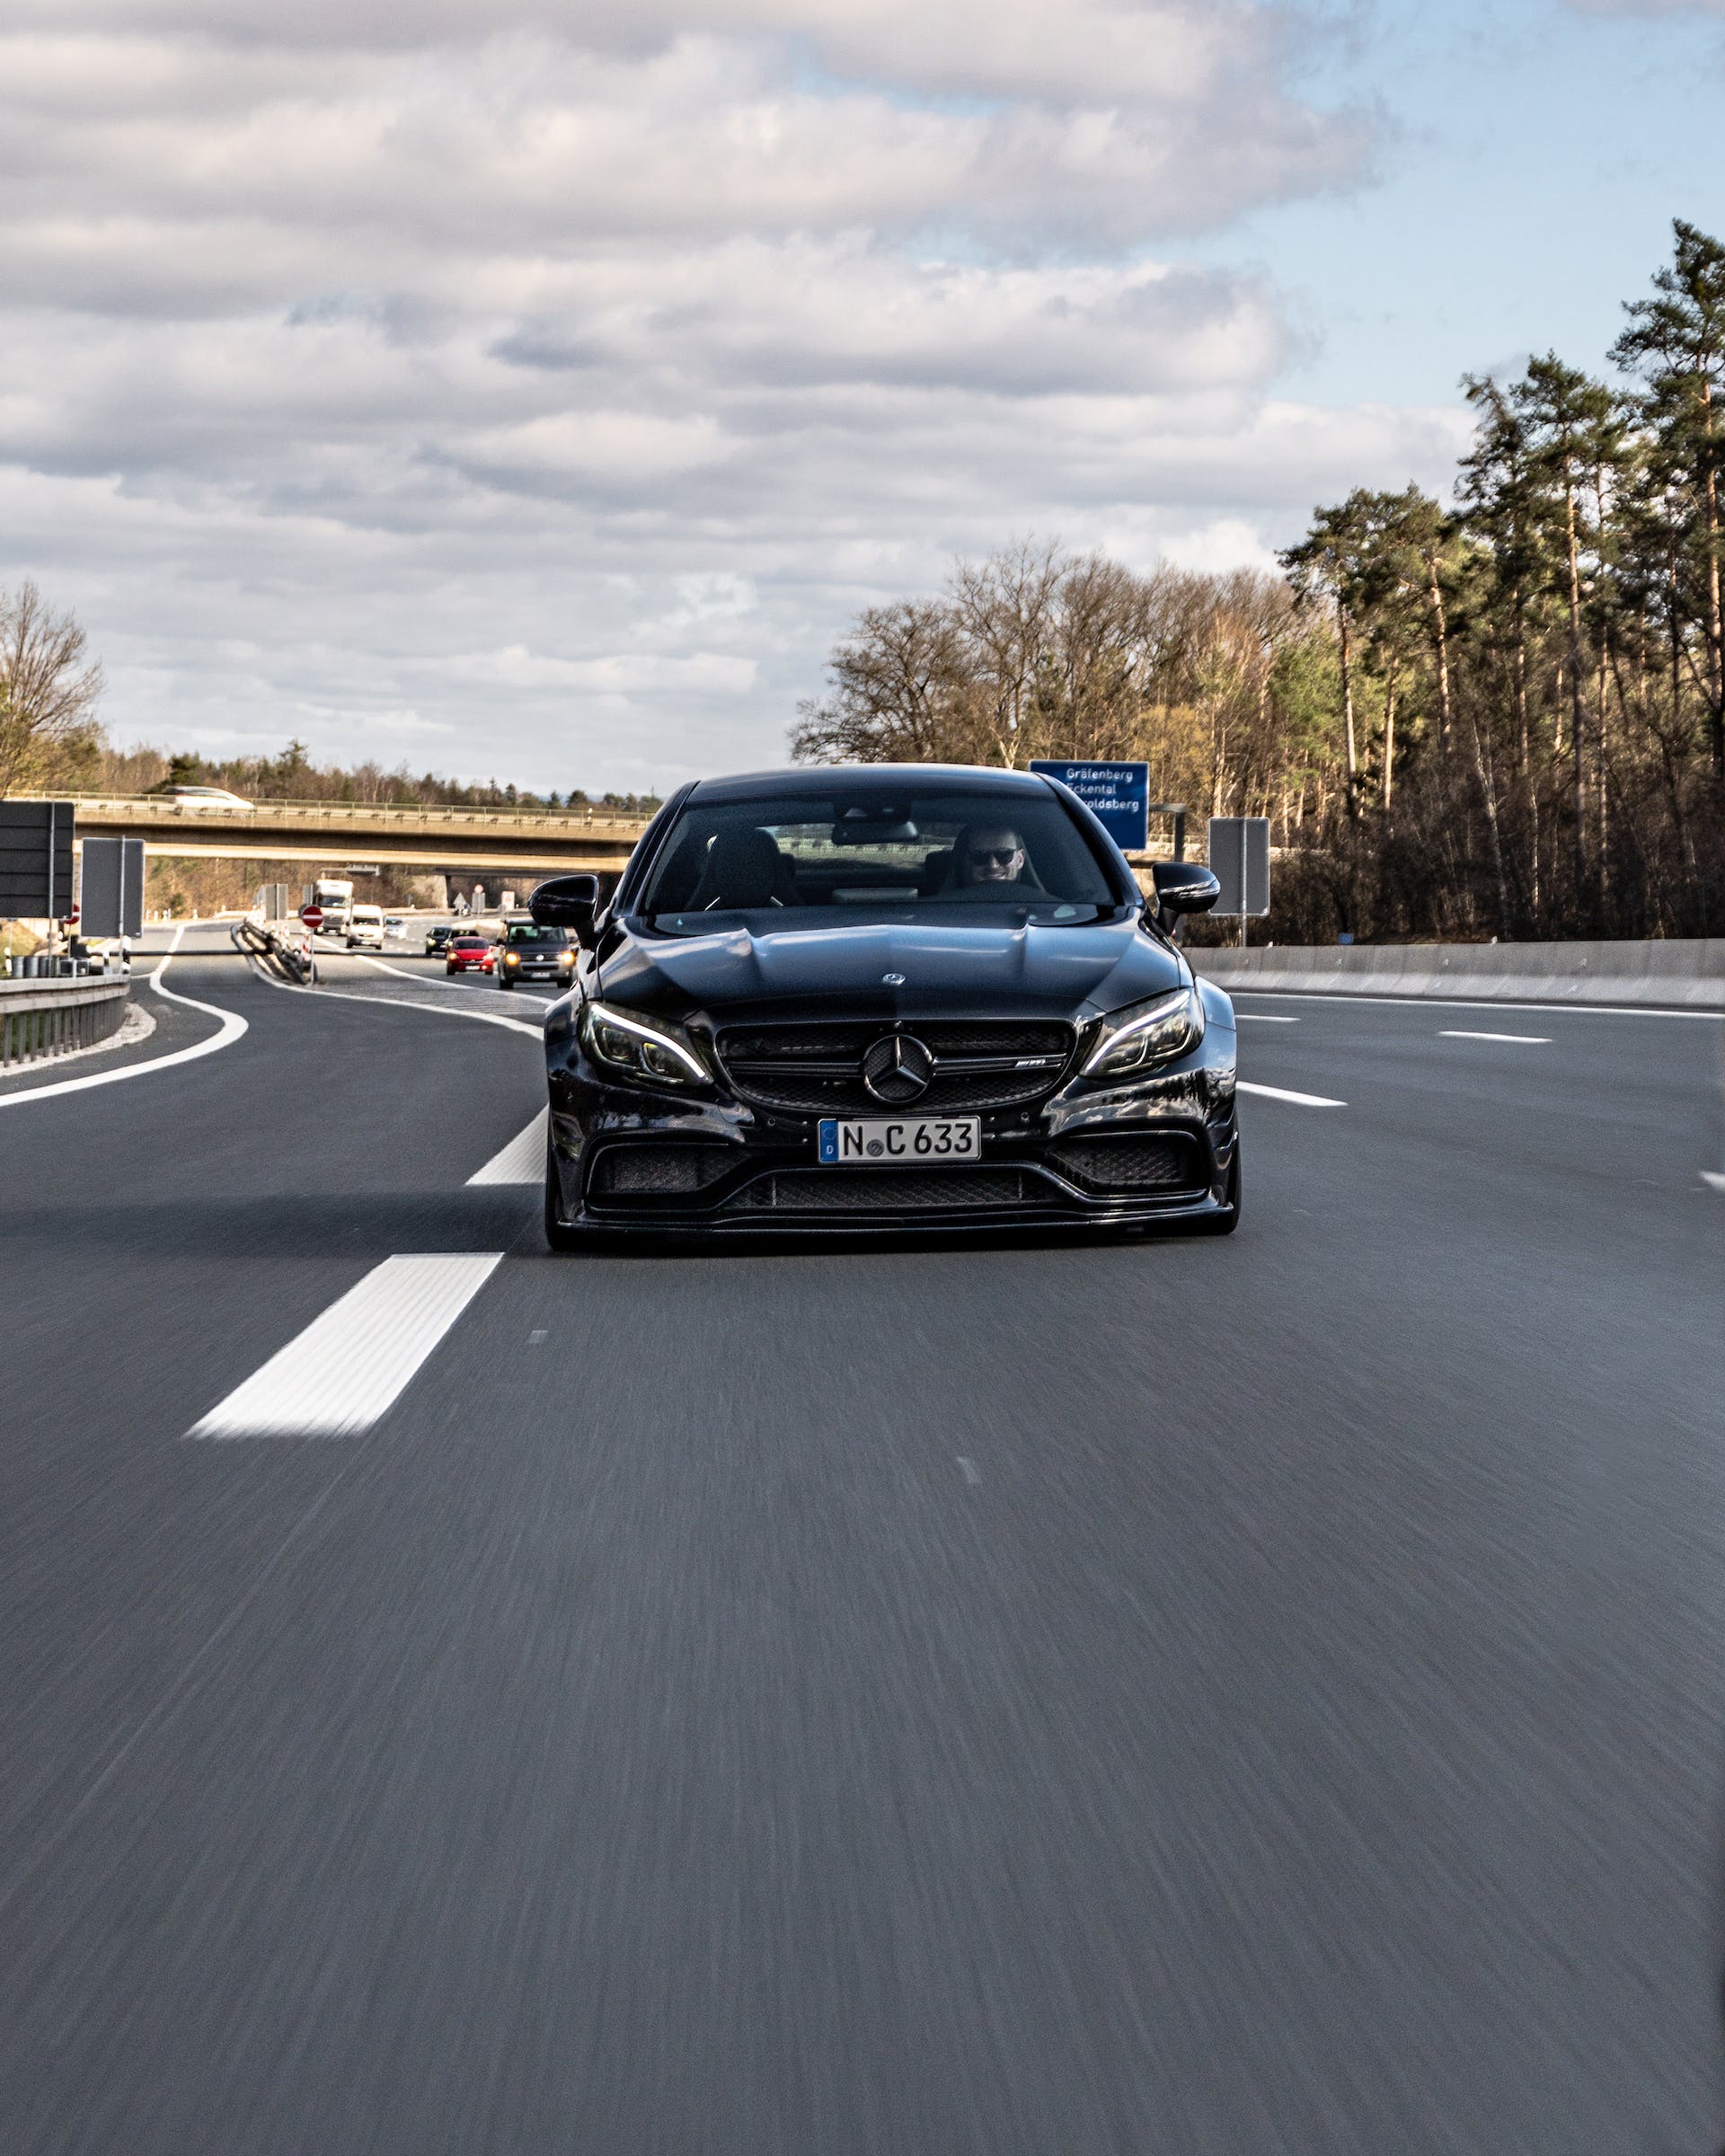 A man driving a Mercedes | Source: Pexels